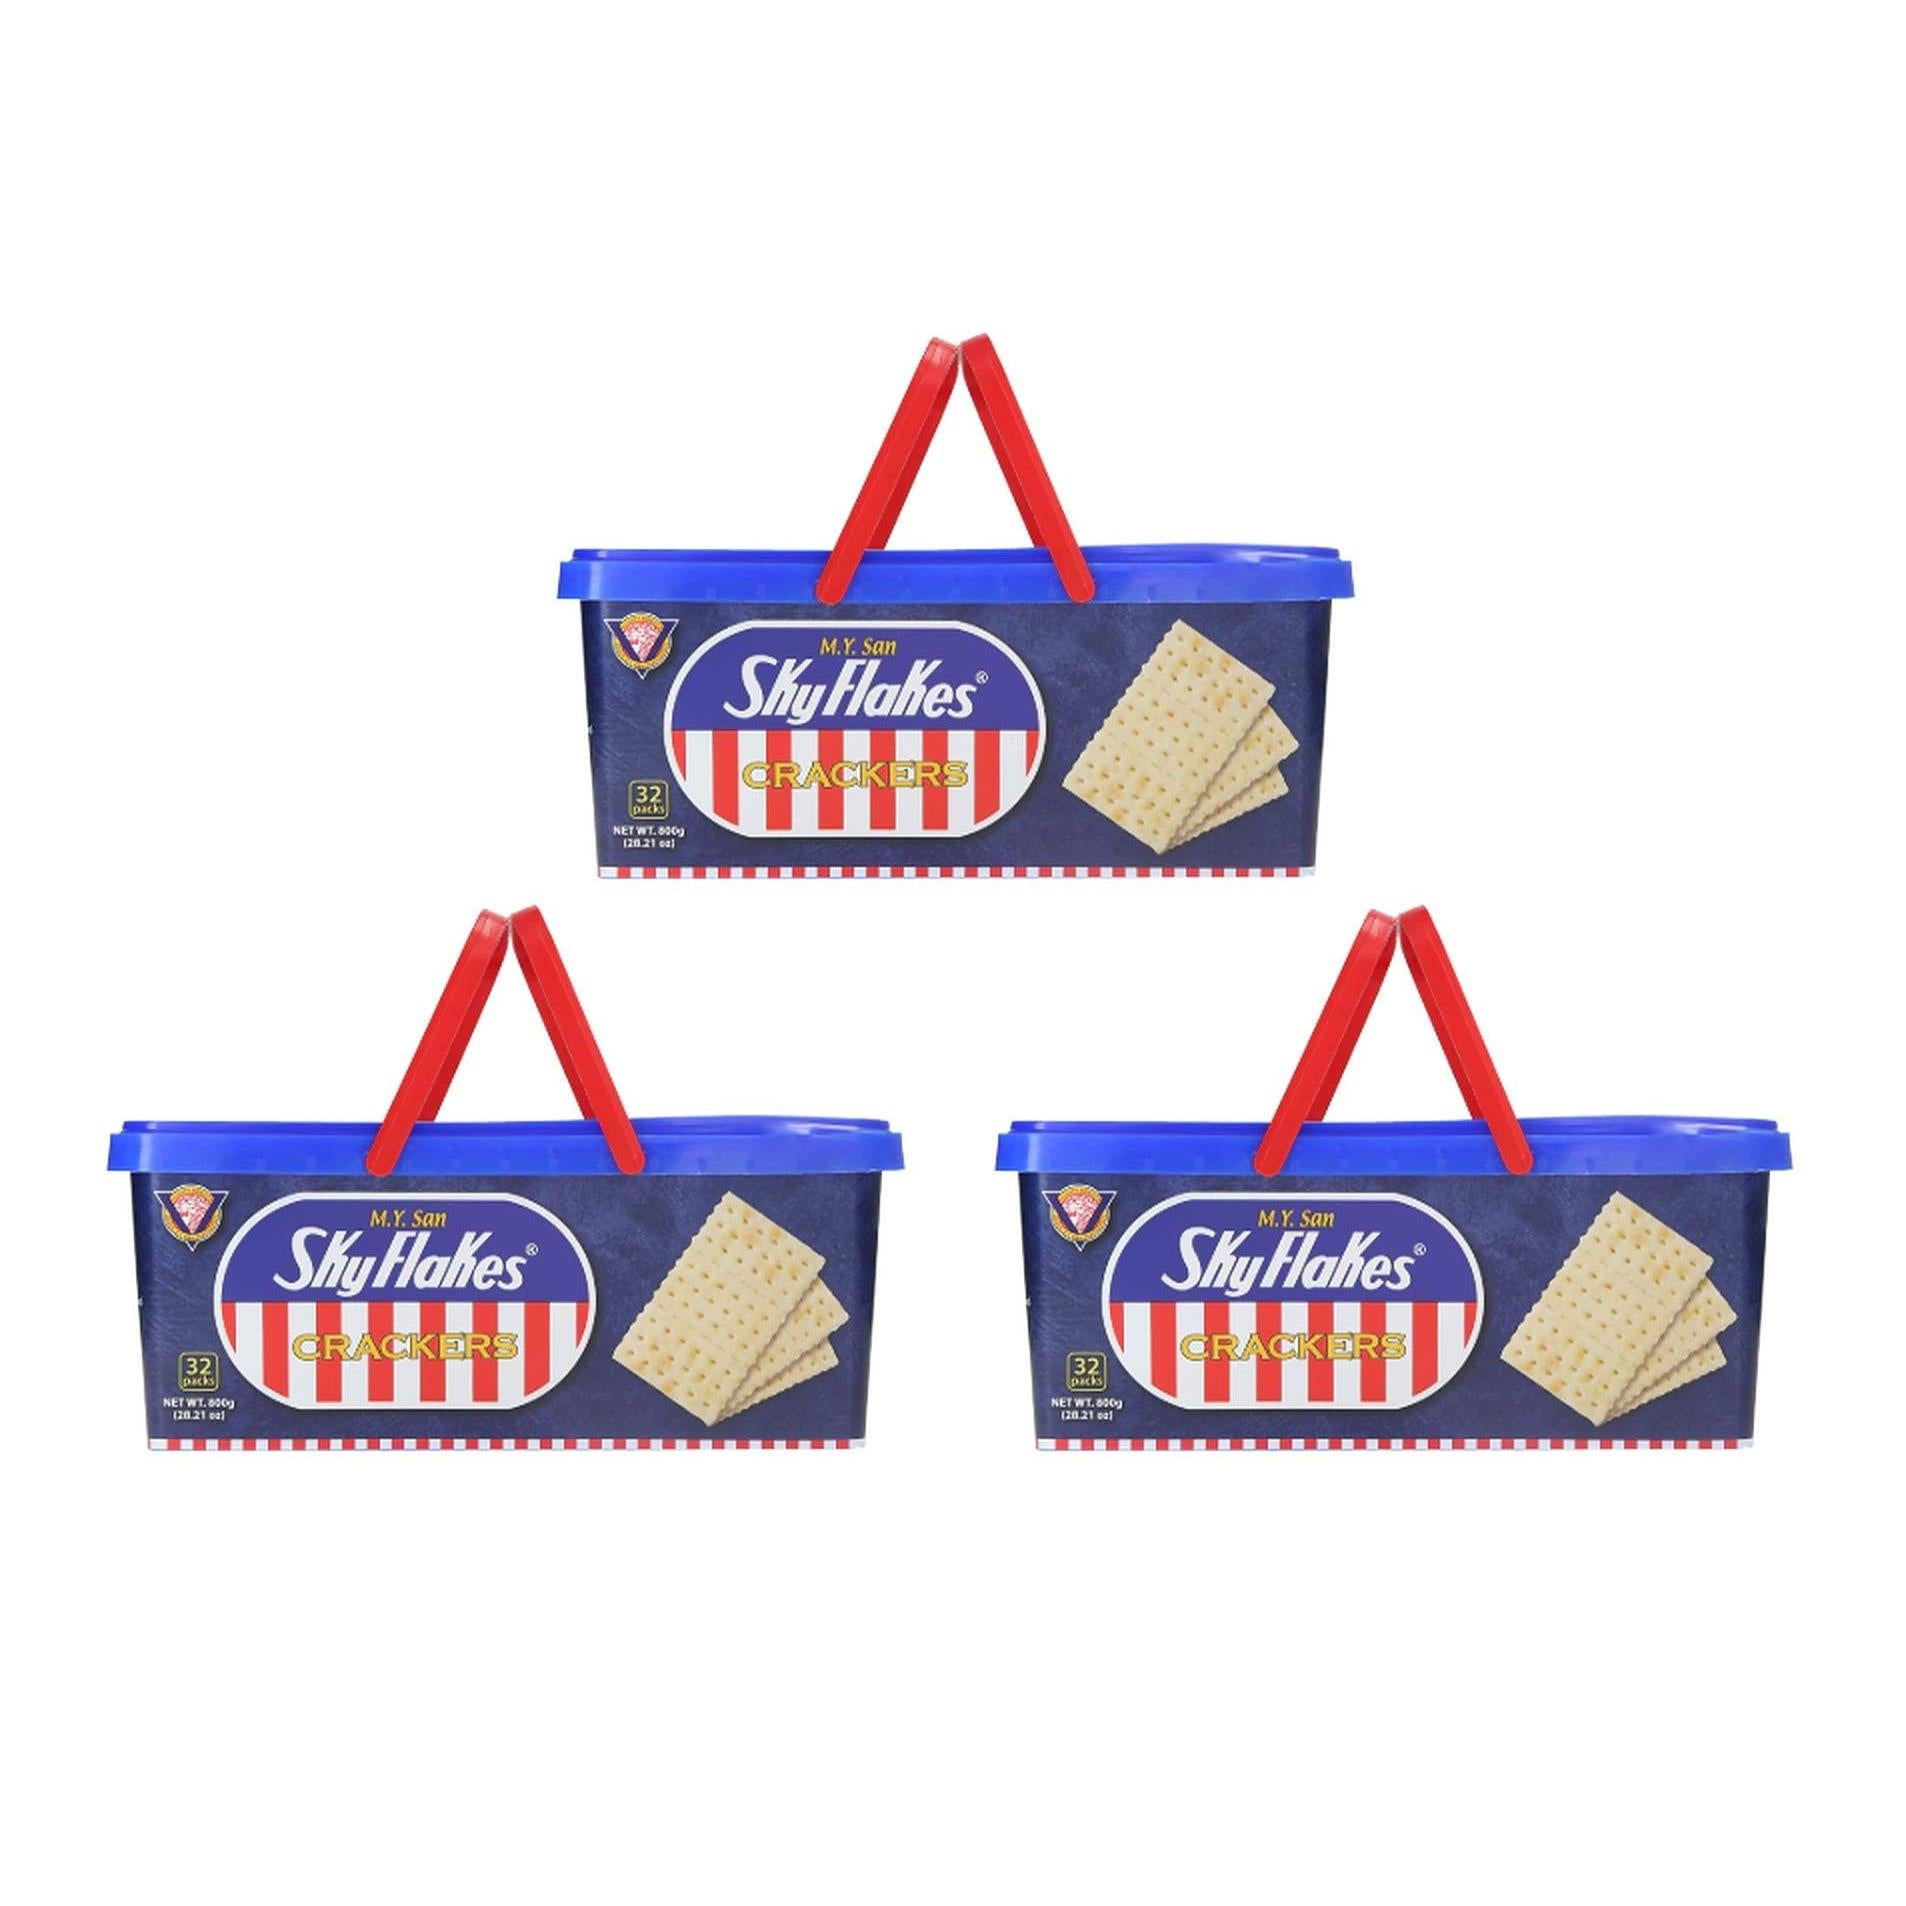 M.Y. San Skyflakes Crackers, (3 Pack, Total of 2400g)